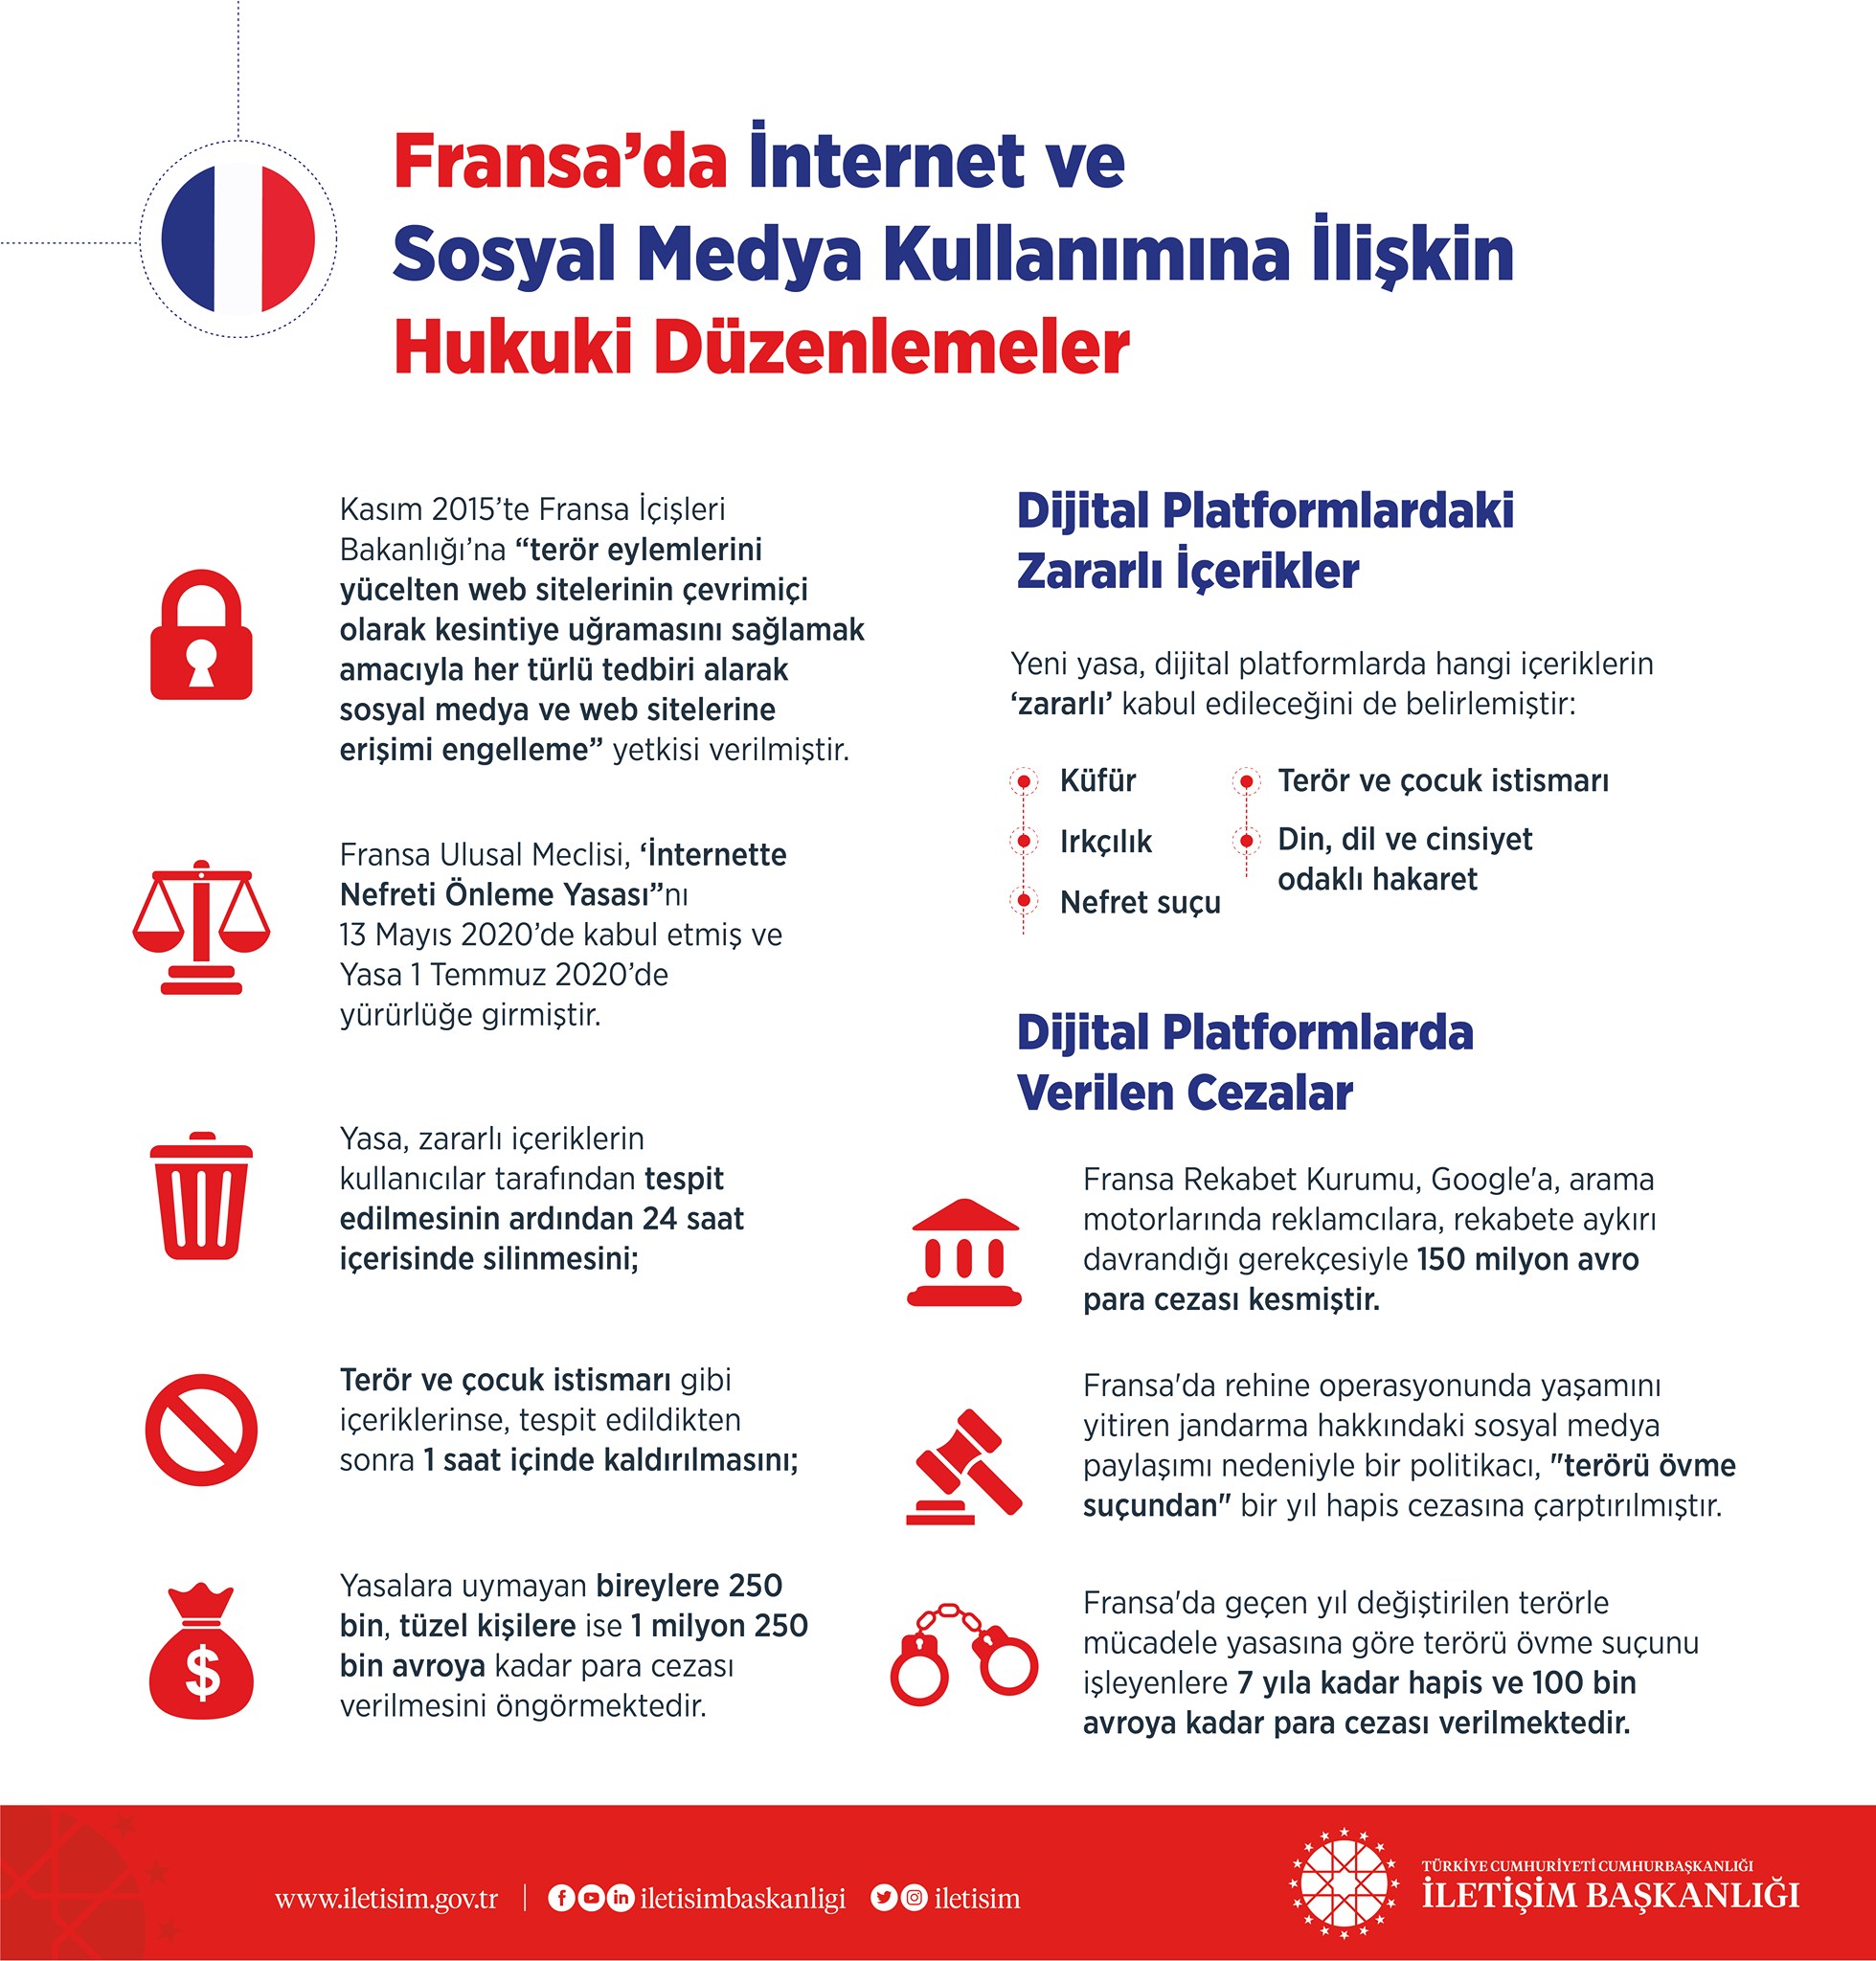 Sosyal medya kanunu için ABD, Almanya ve Fransa örnekleri inceleniyor